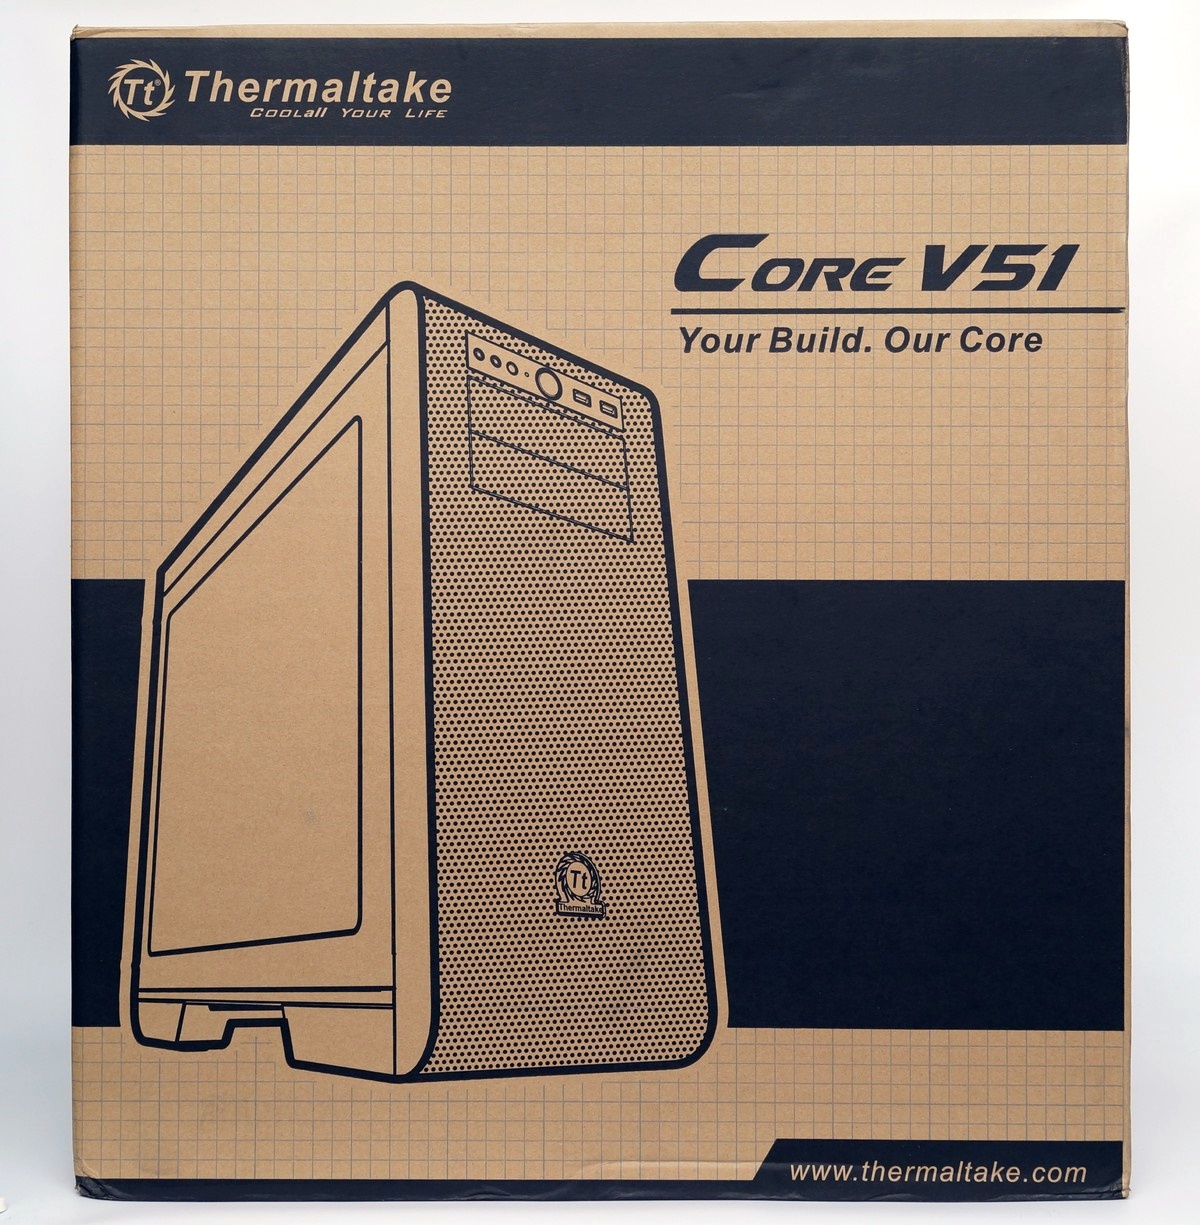 [XF] 風水冷模組化設計到位 展現實用機能美學 Thermaltake Core V51機殼評測